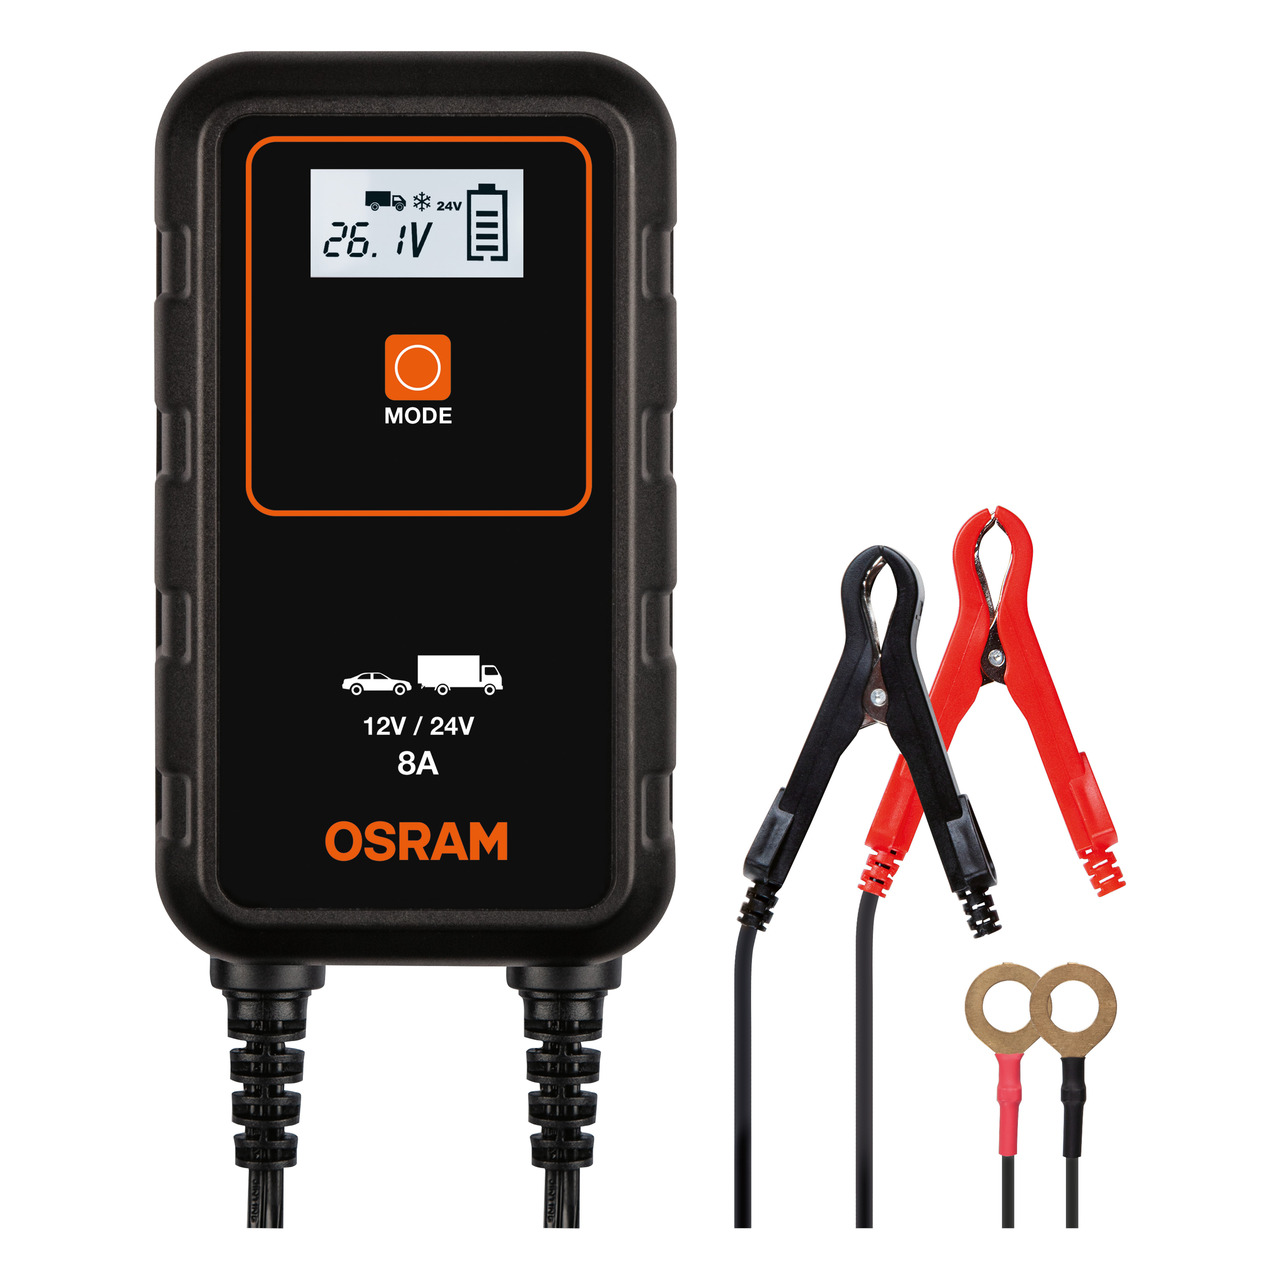 OSRAM Kfz-Batterieladegerät BATTERYcharge 908- 12-24 V- 8 A- für Autos-Klein-LKW unter KFZ